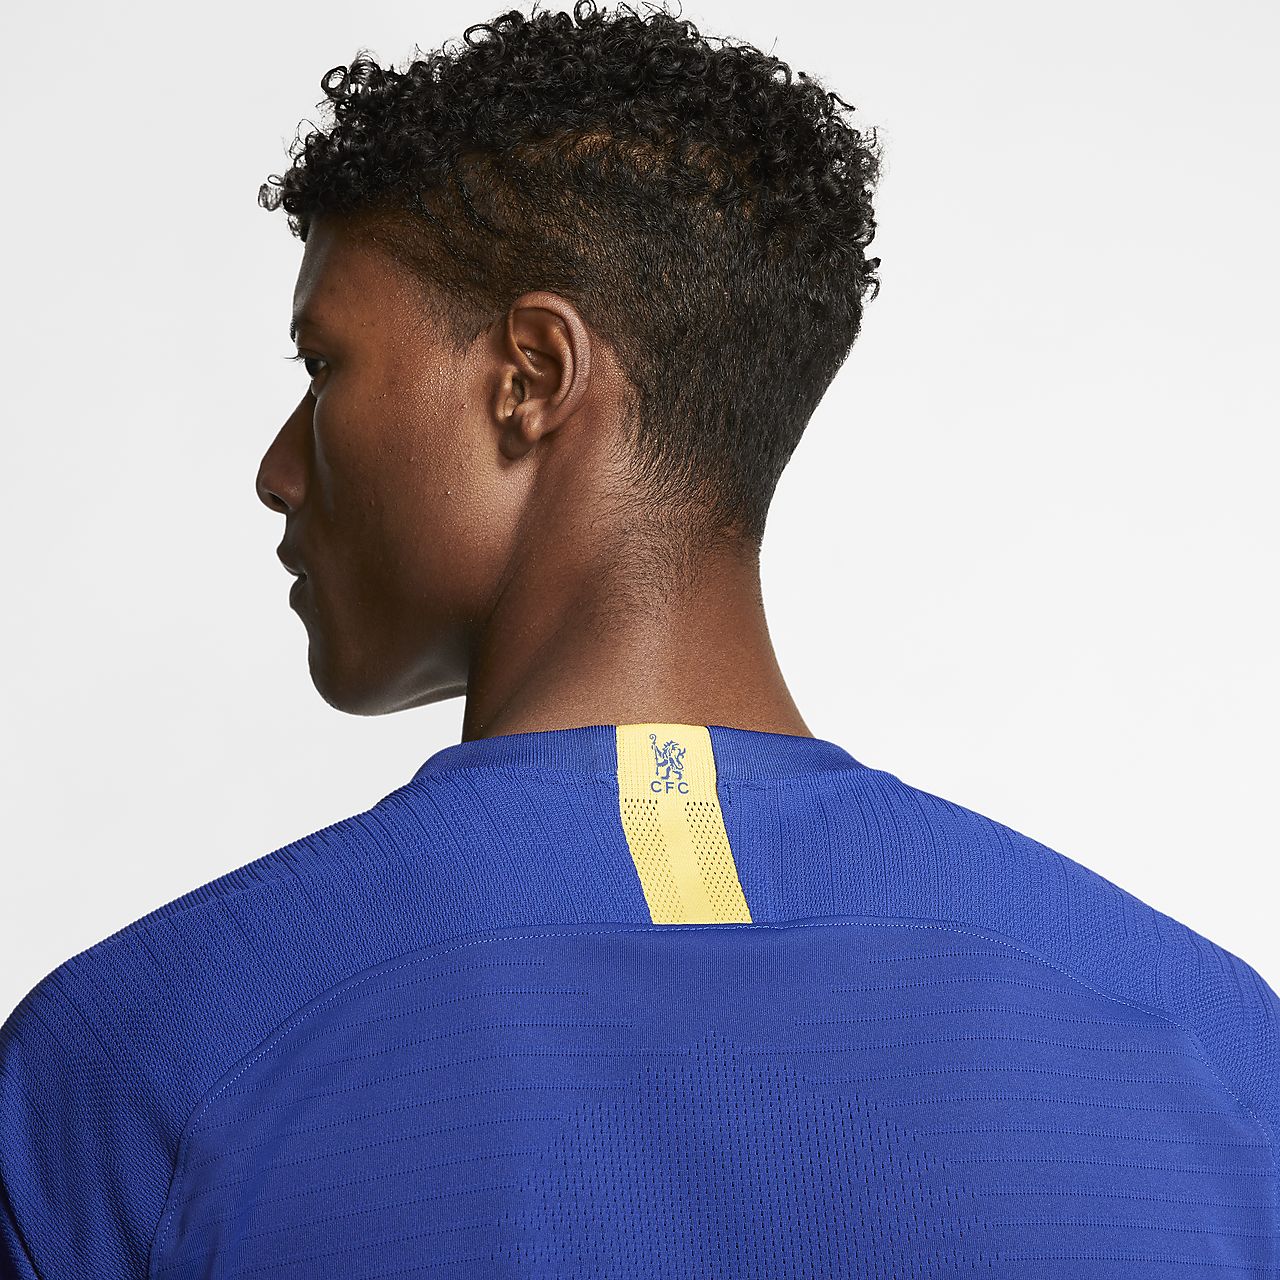 Chelsea 2019-20 Nike Fourth Kit | 19/20 Kits | Football shirt blog